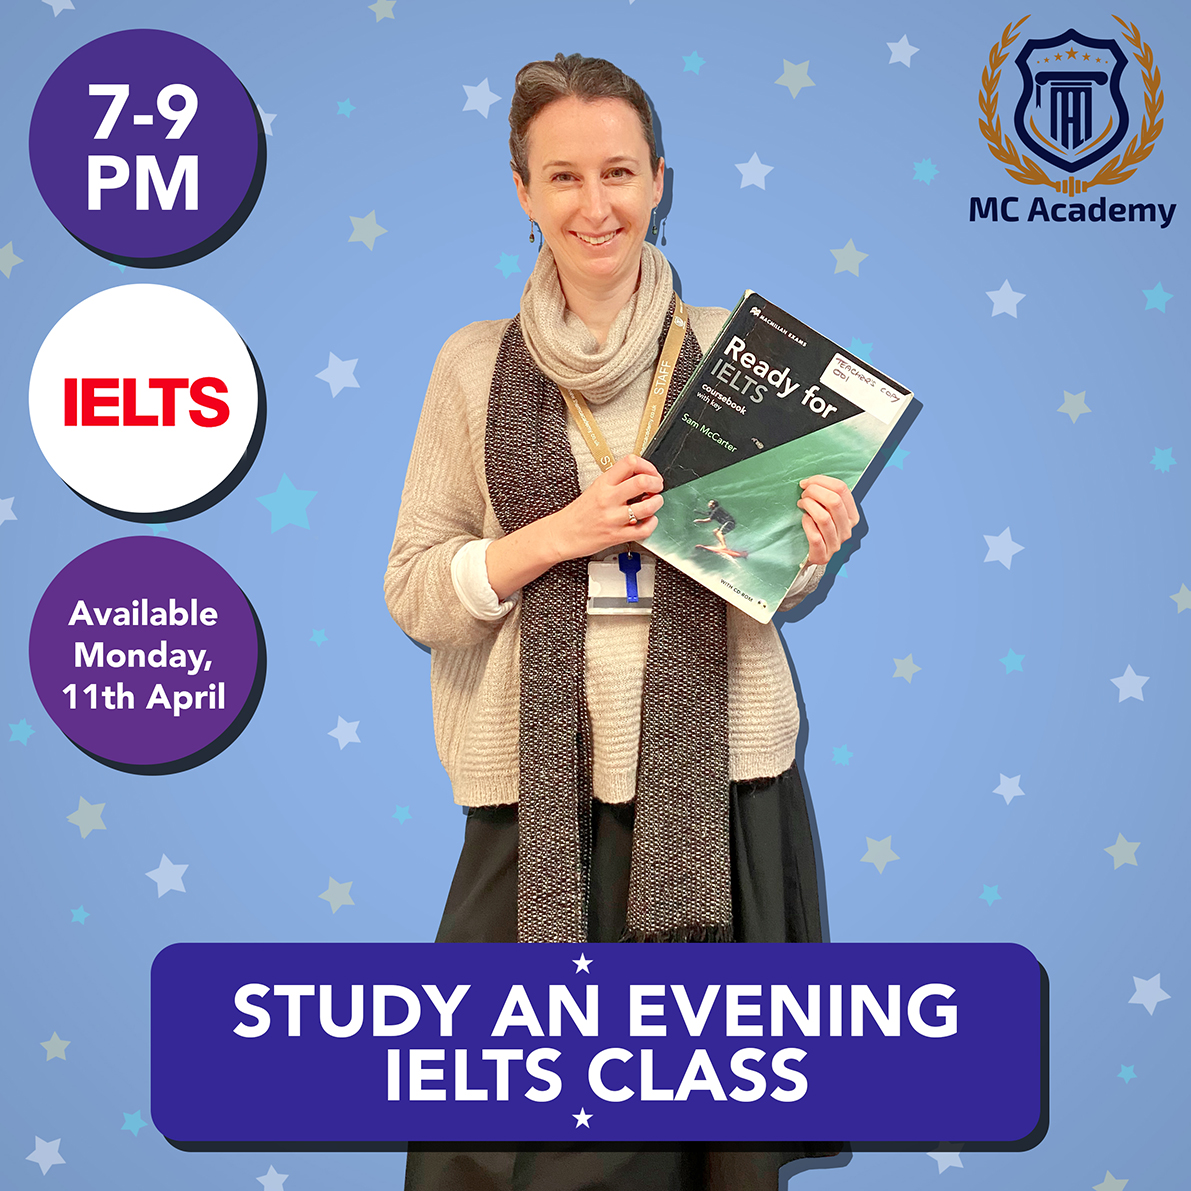 Study an IELTS evening class at MC Academy